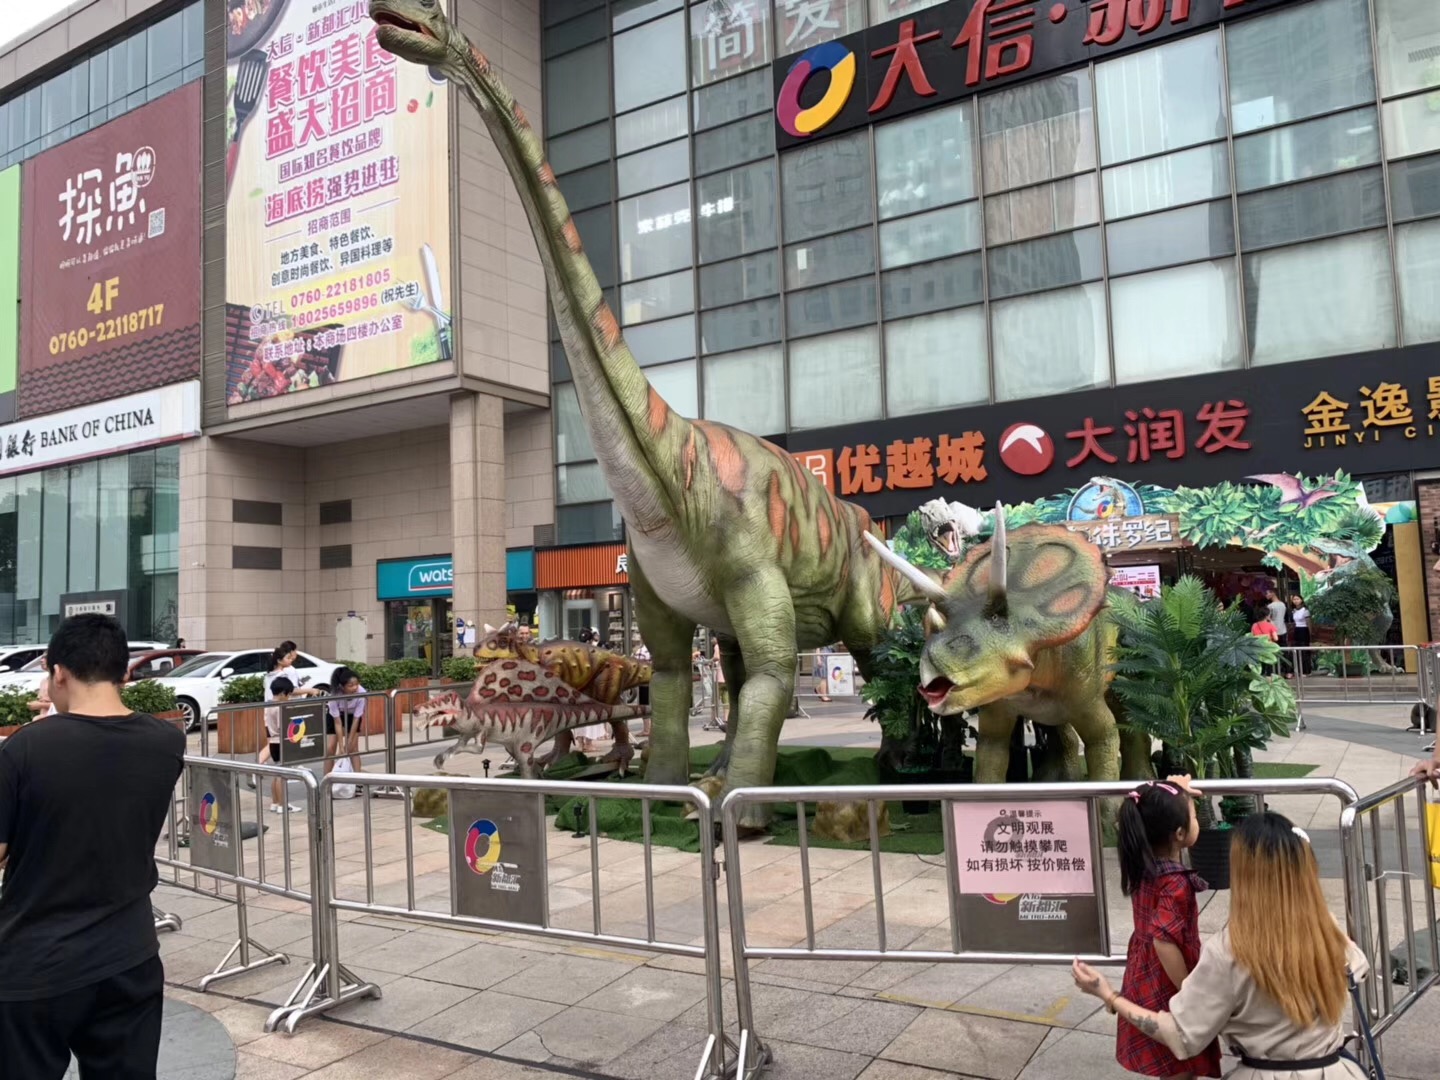 仿真恐龙展出租侏罗纪恐龙租赁专业恐龙模型出租